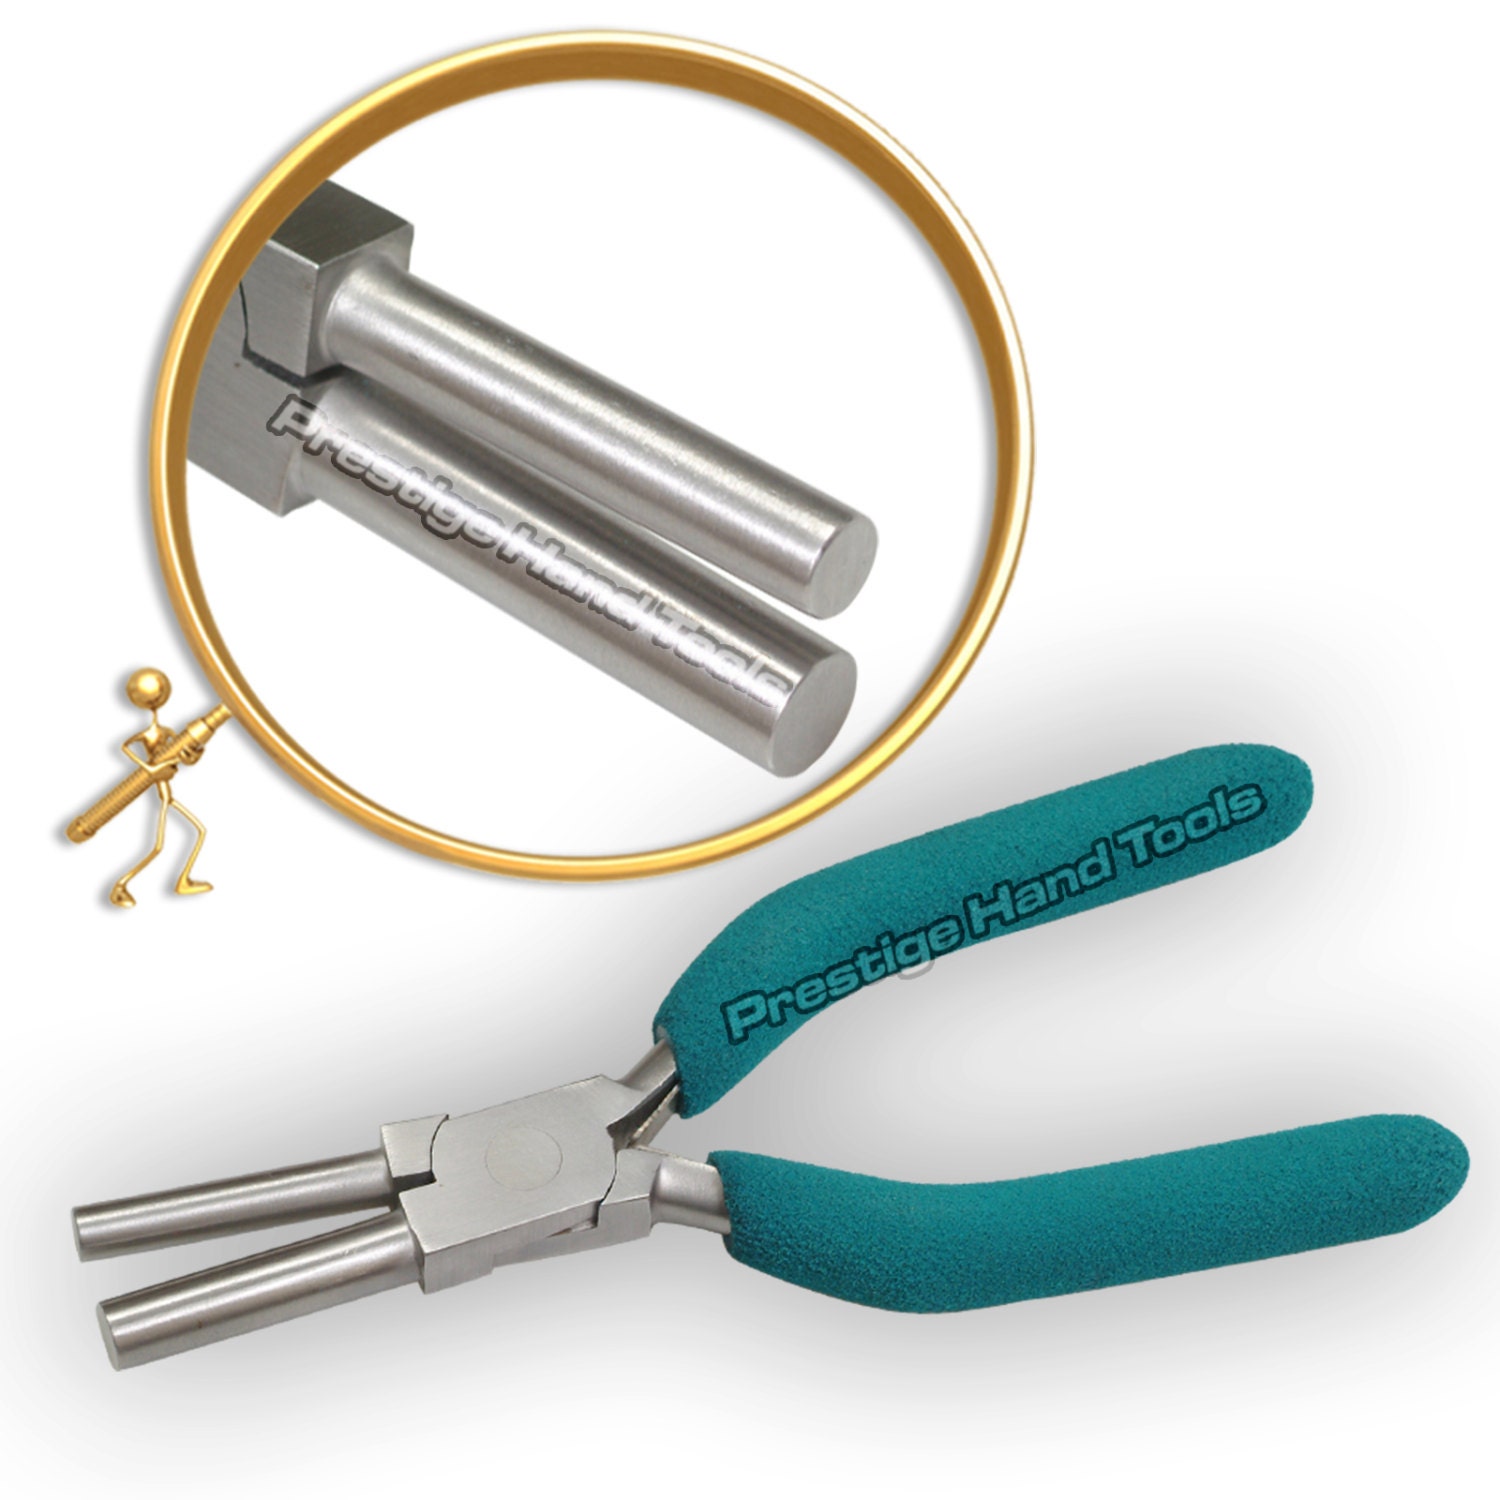 Side Cutting Jewelry Pliers, Premium Slimline, Jewelry Tools